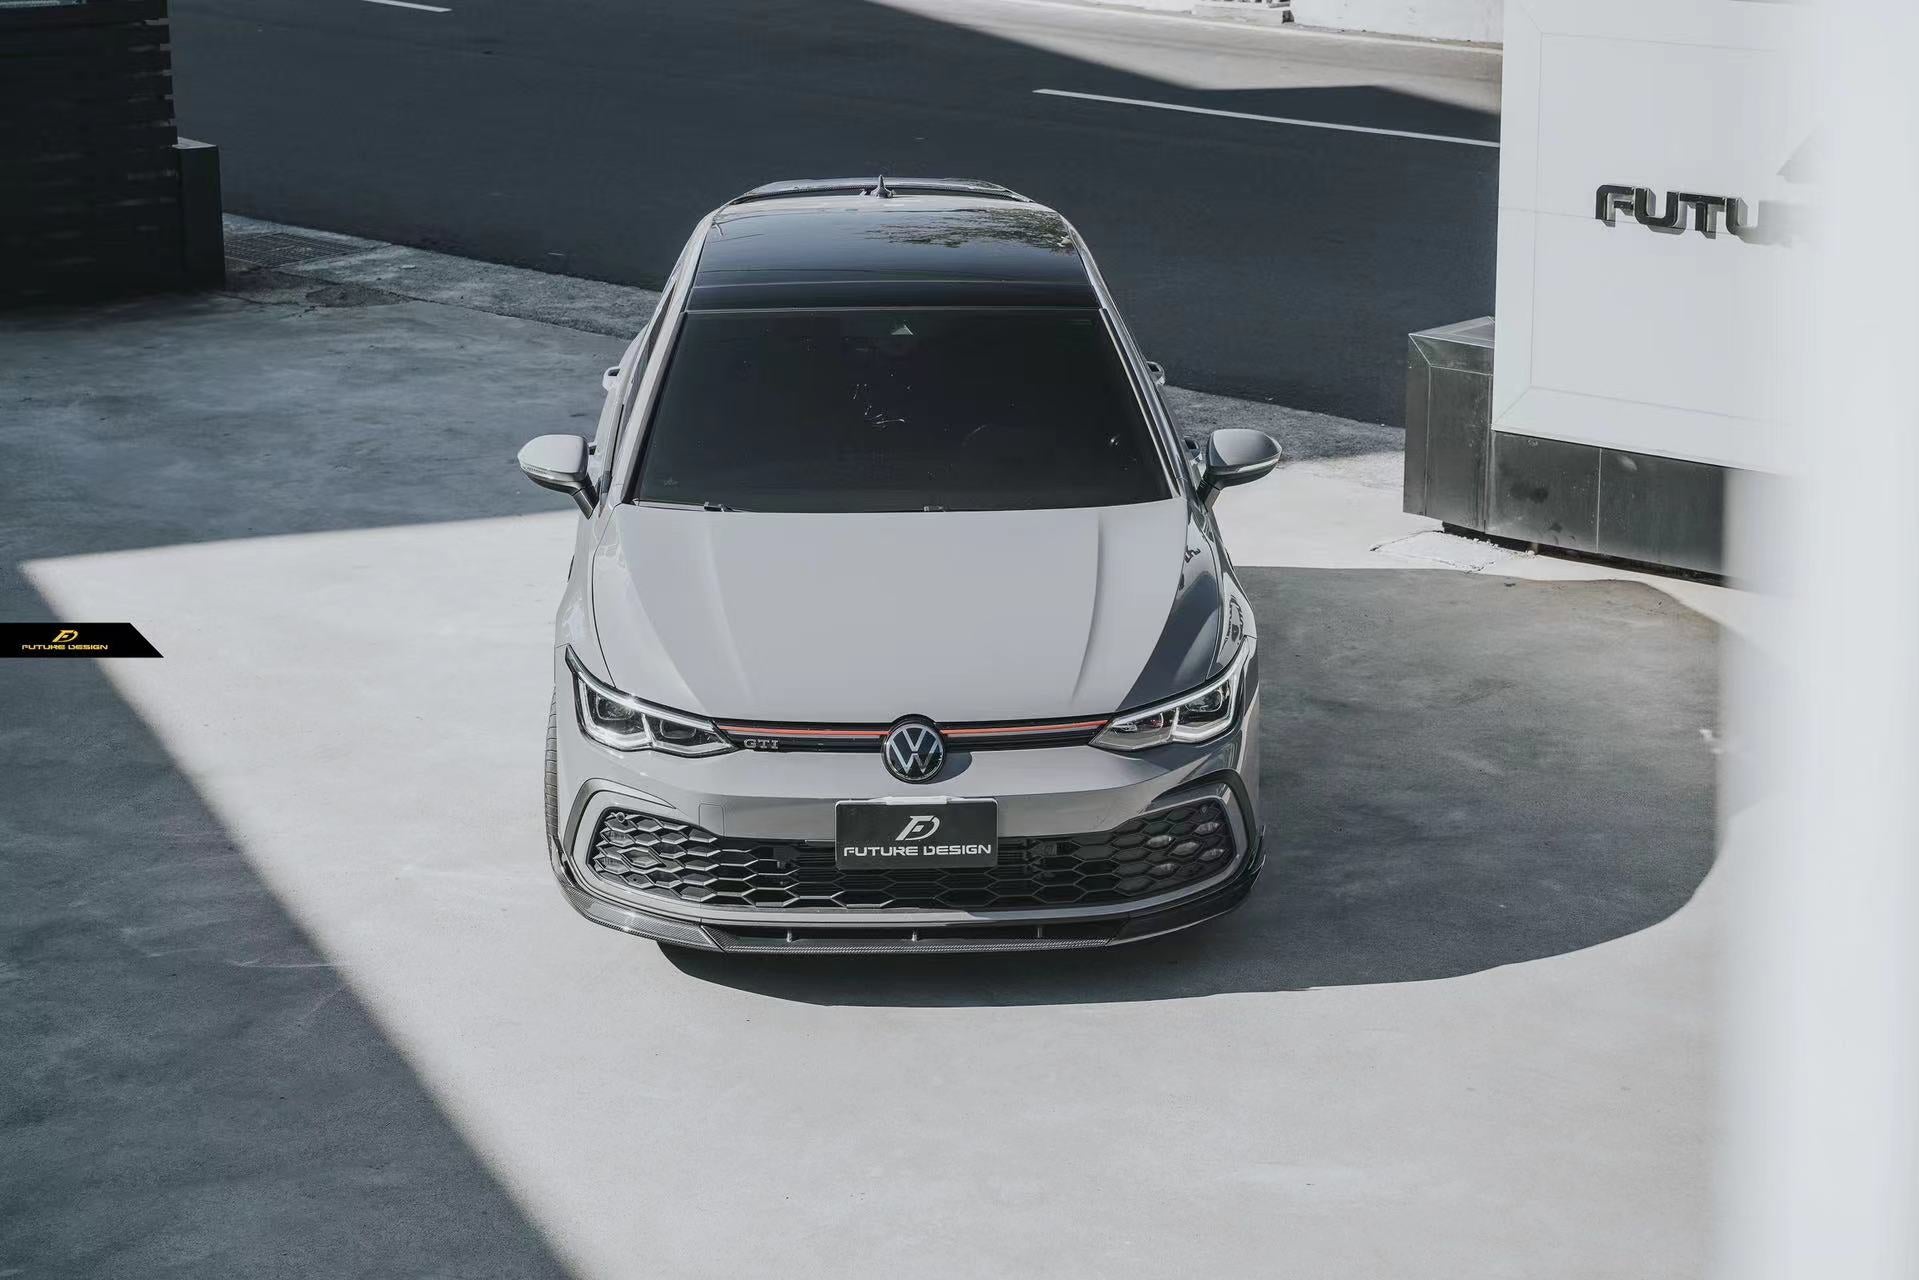 Future Design FD Carbon Fiber FULL BODY KIT for Volkswagen GTI MK8